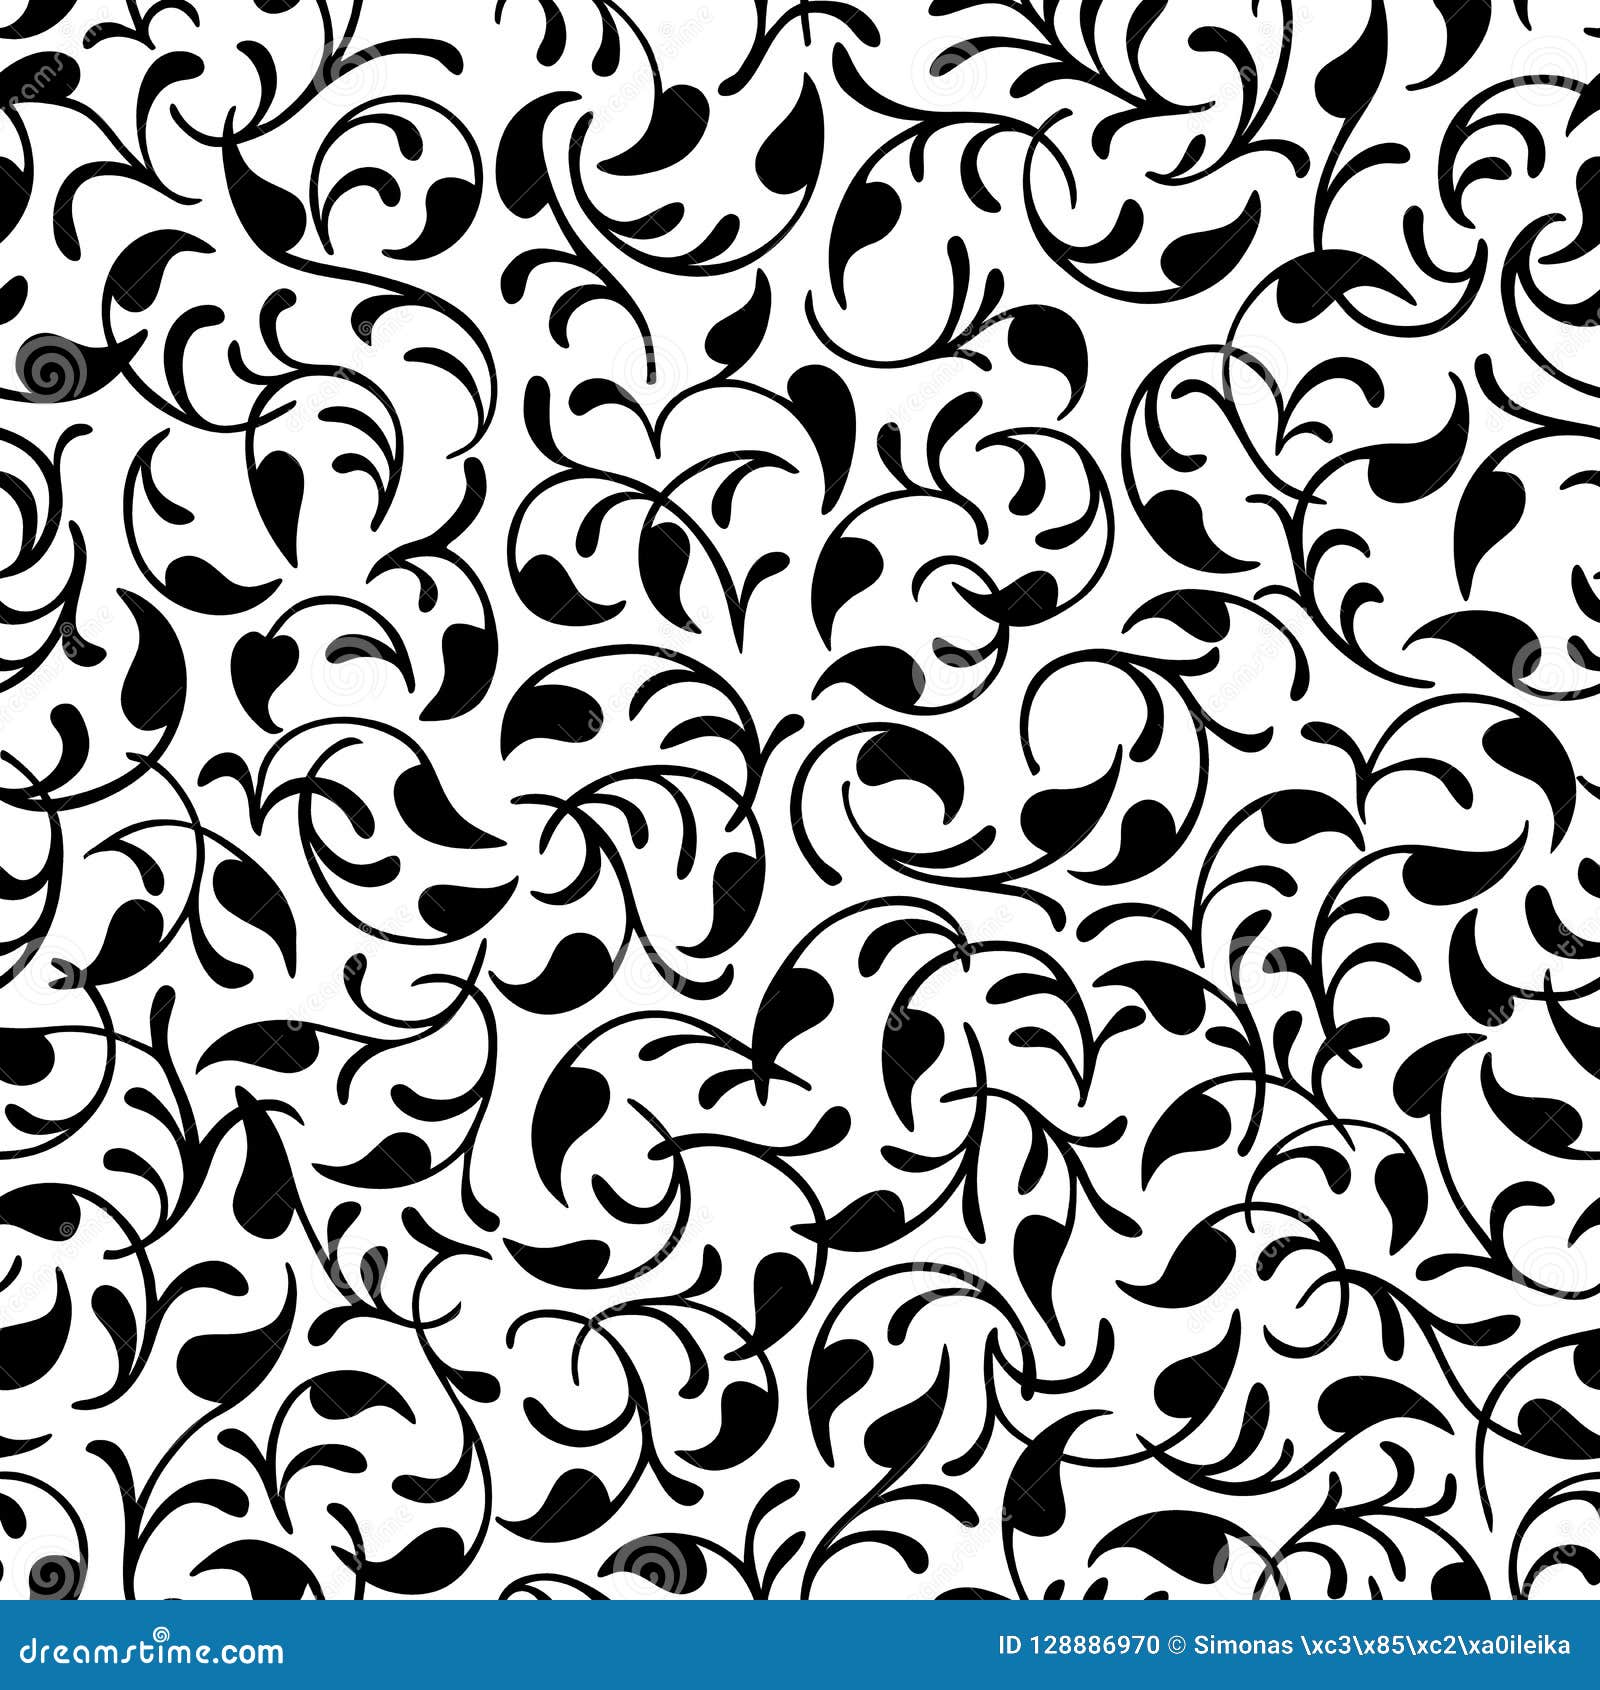 Details 100 pattern texture background 